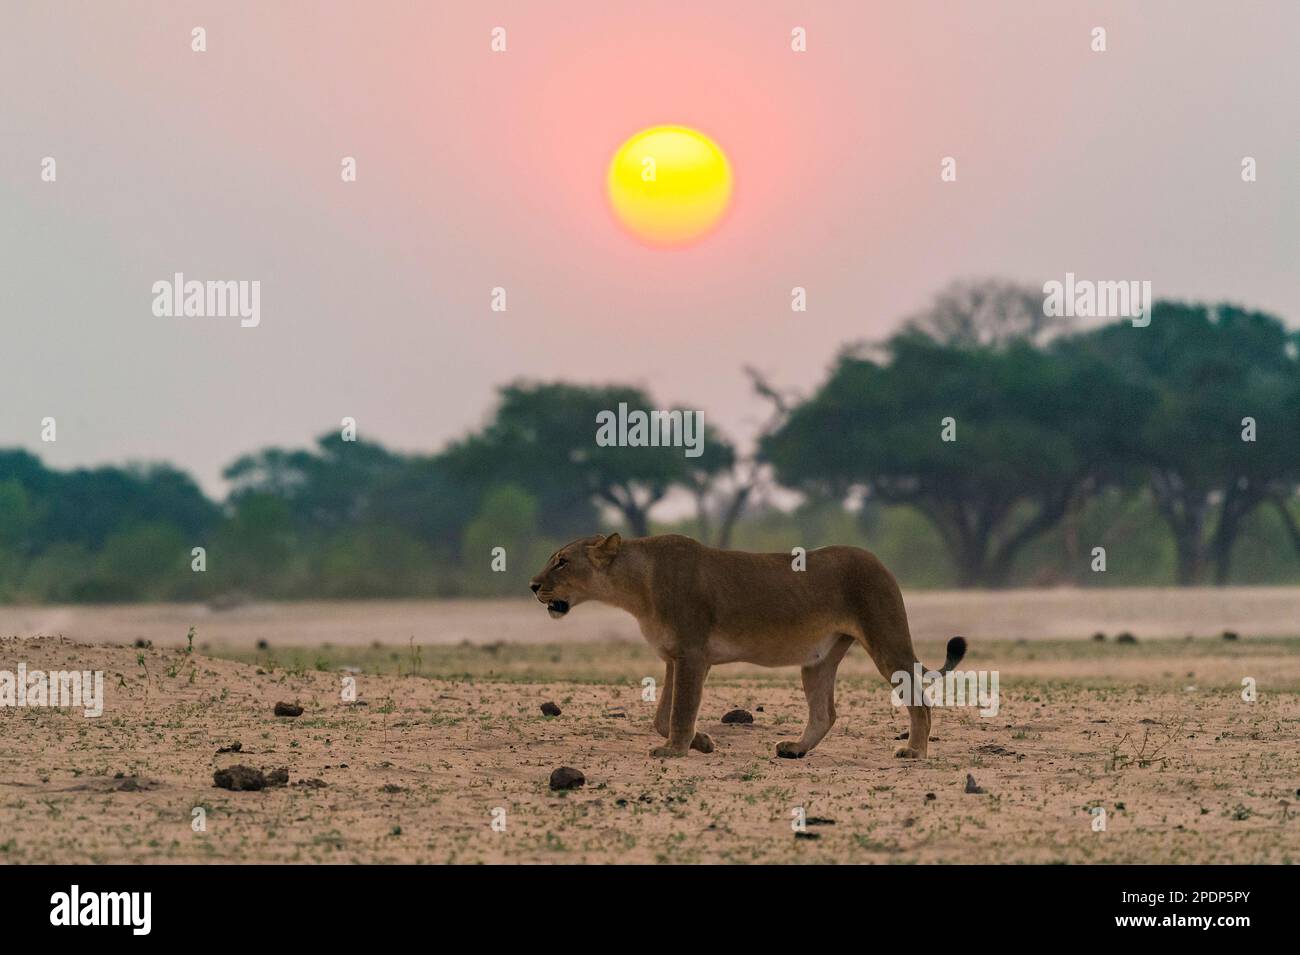 Une femme lion, Panthera Leo, marche devant le soleil couchant dans le parc national de Hwange au Zimbabwe Banque D'Images